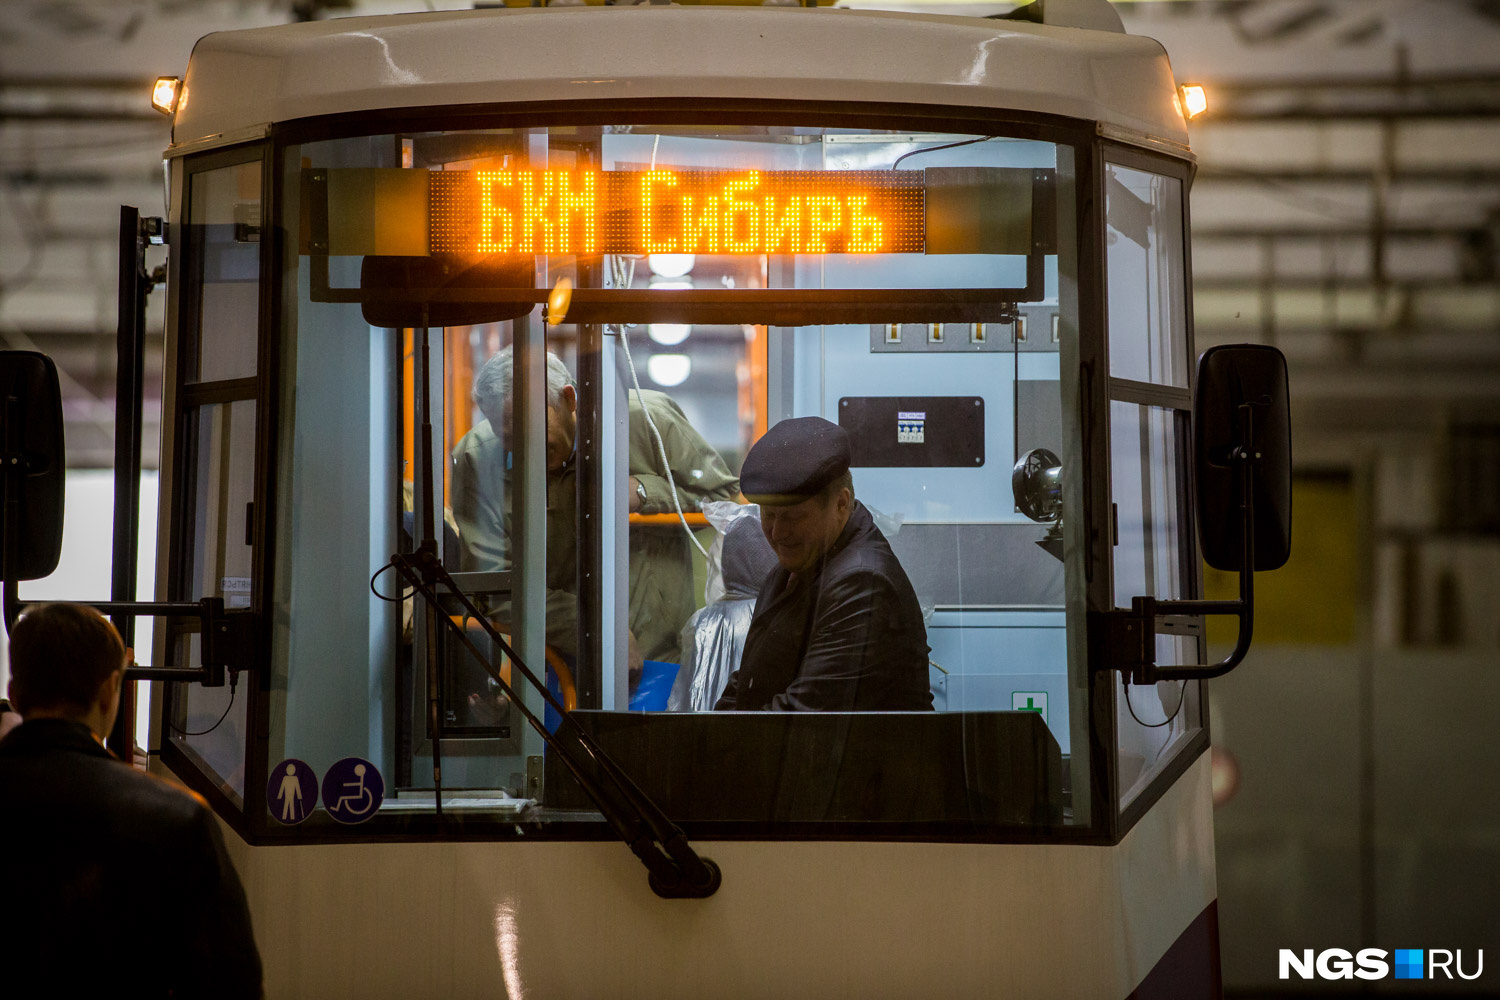 Новосибирцы смогут увидеть трамвай на Транспортном форуме в Экспоцентре